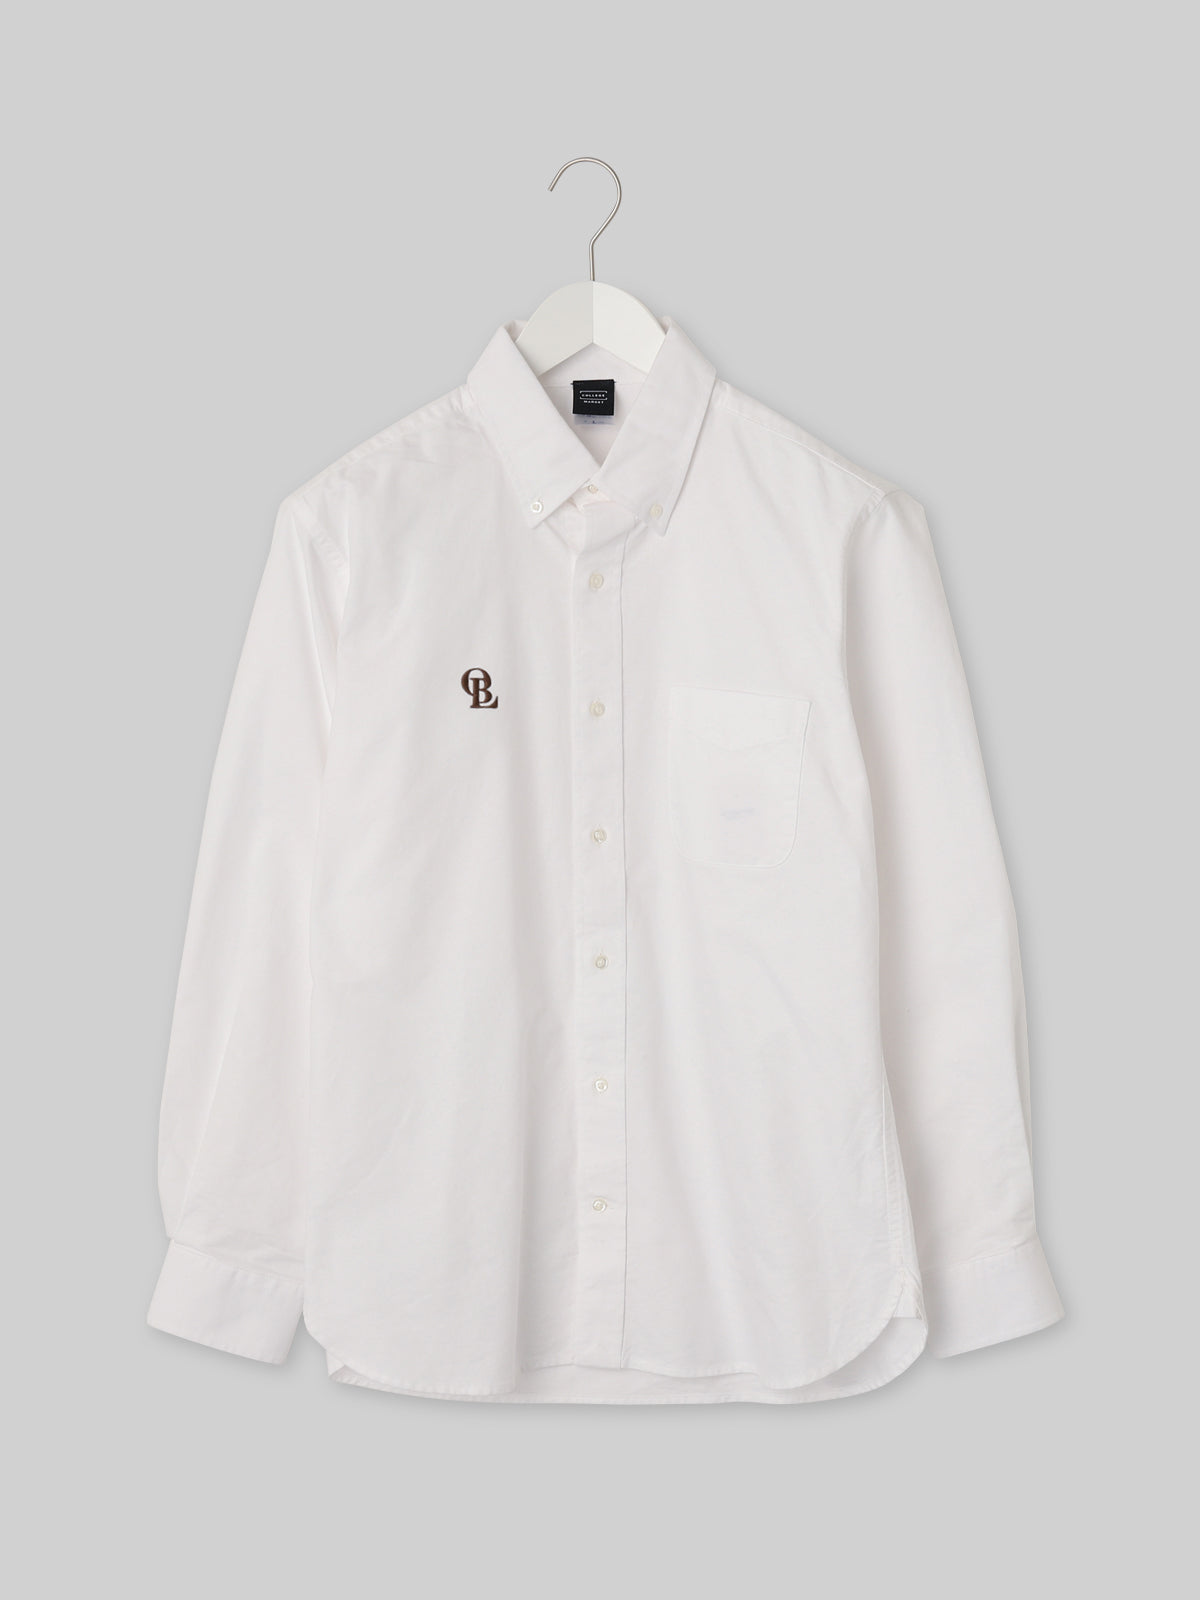 J. F. OBERLIN オックスフォードボタンダウンシャツ OBLロゴ ホワイト